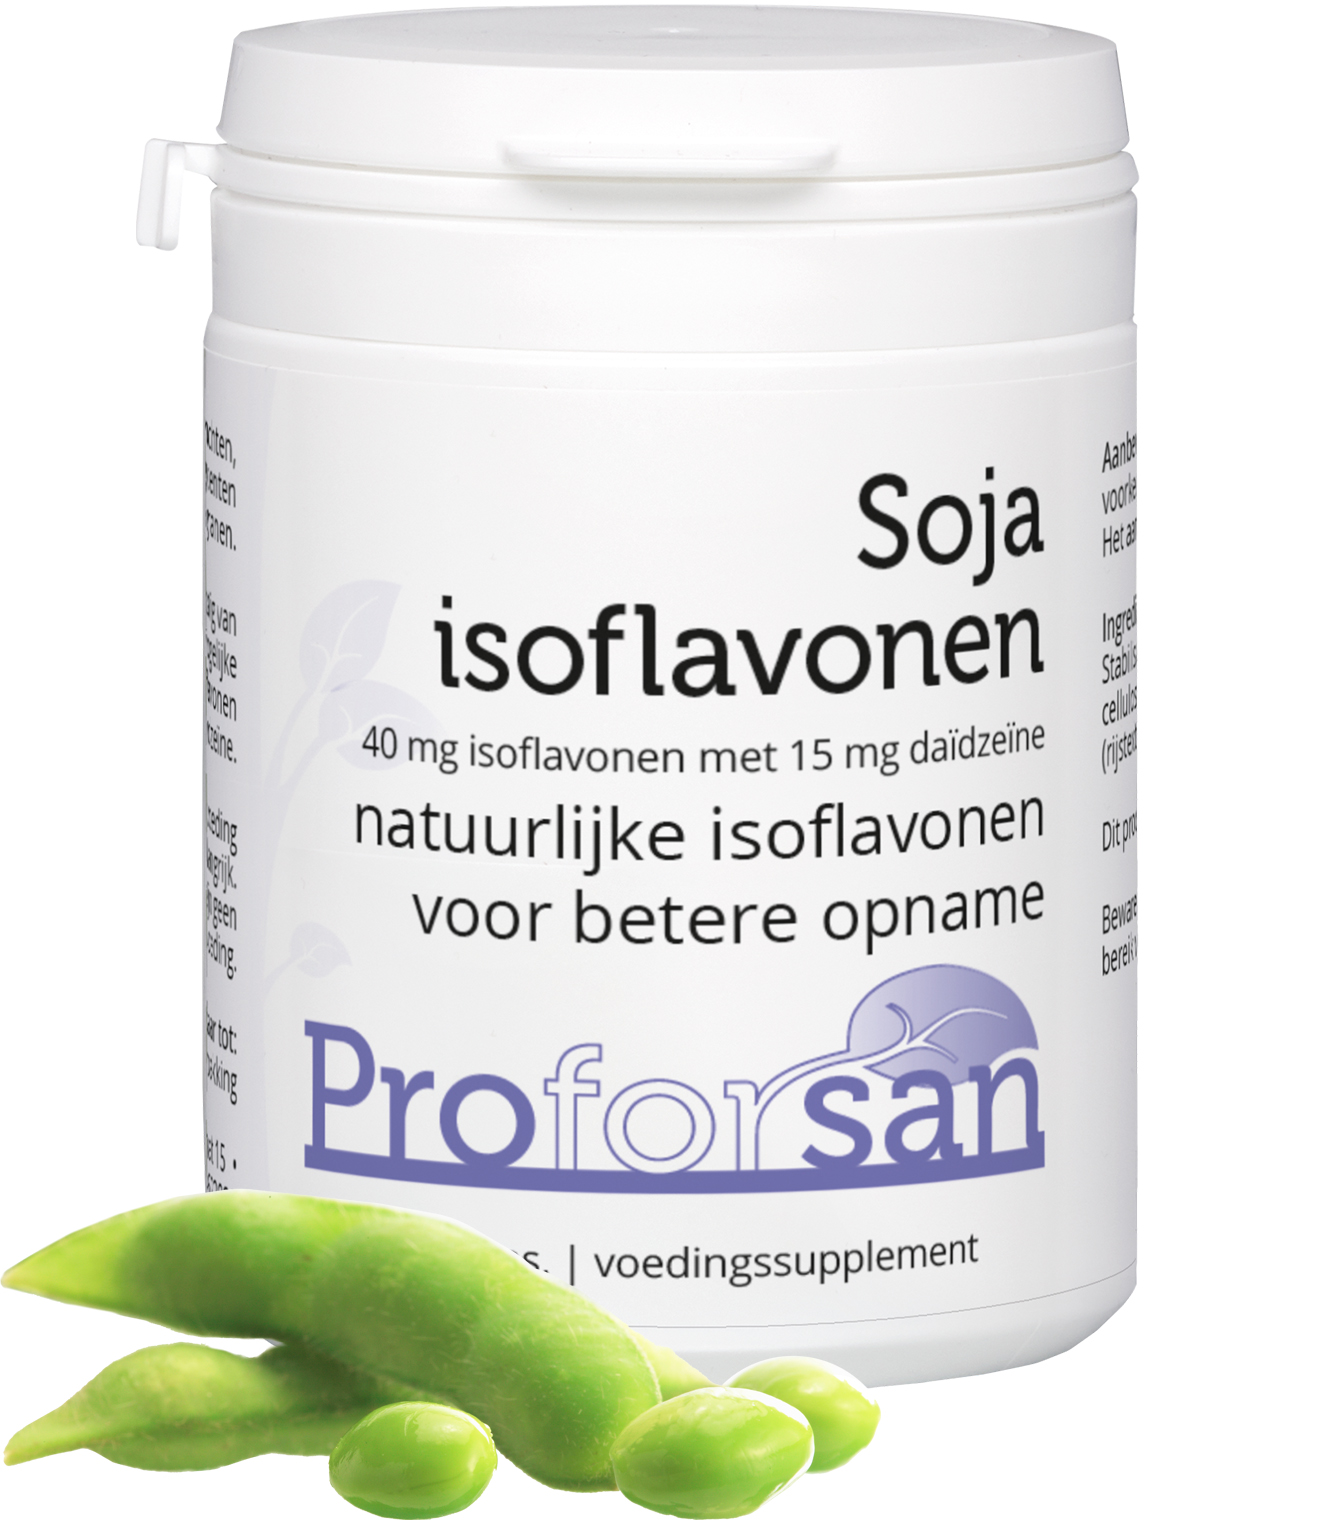 Proforsan Soja isoflavonen - 60 V-capsules